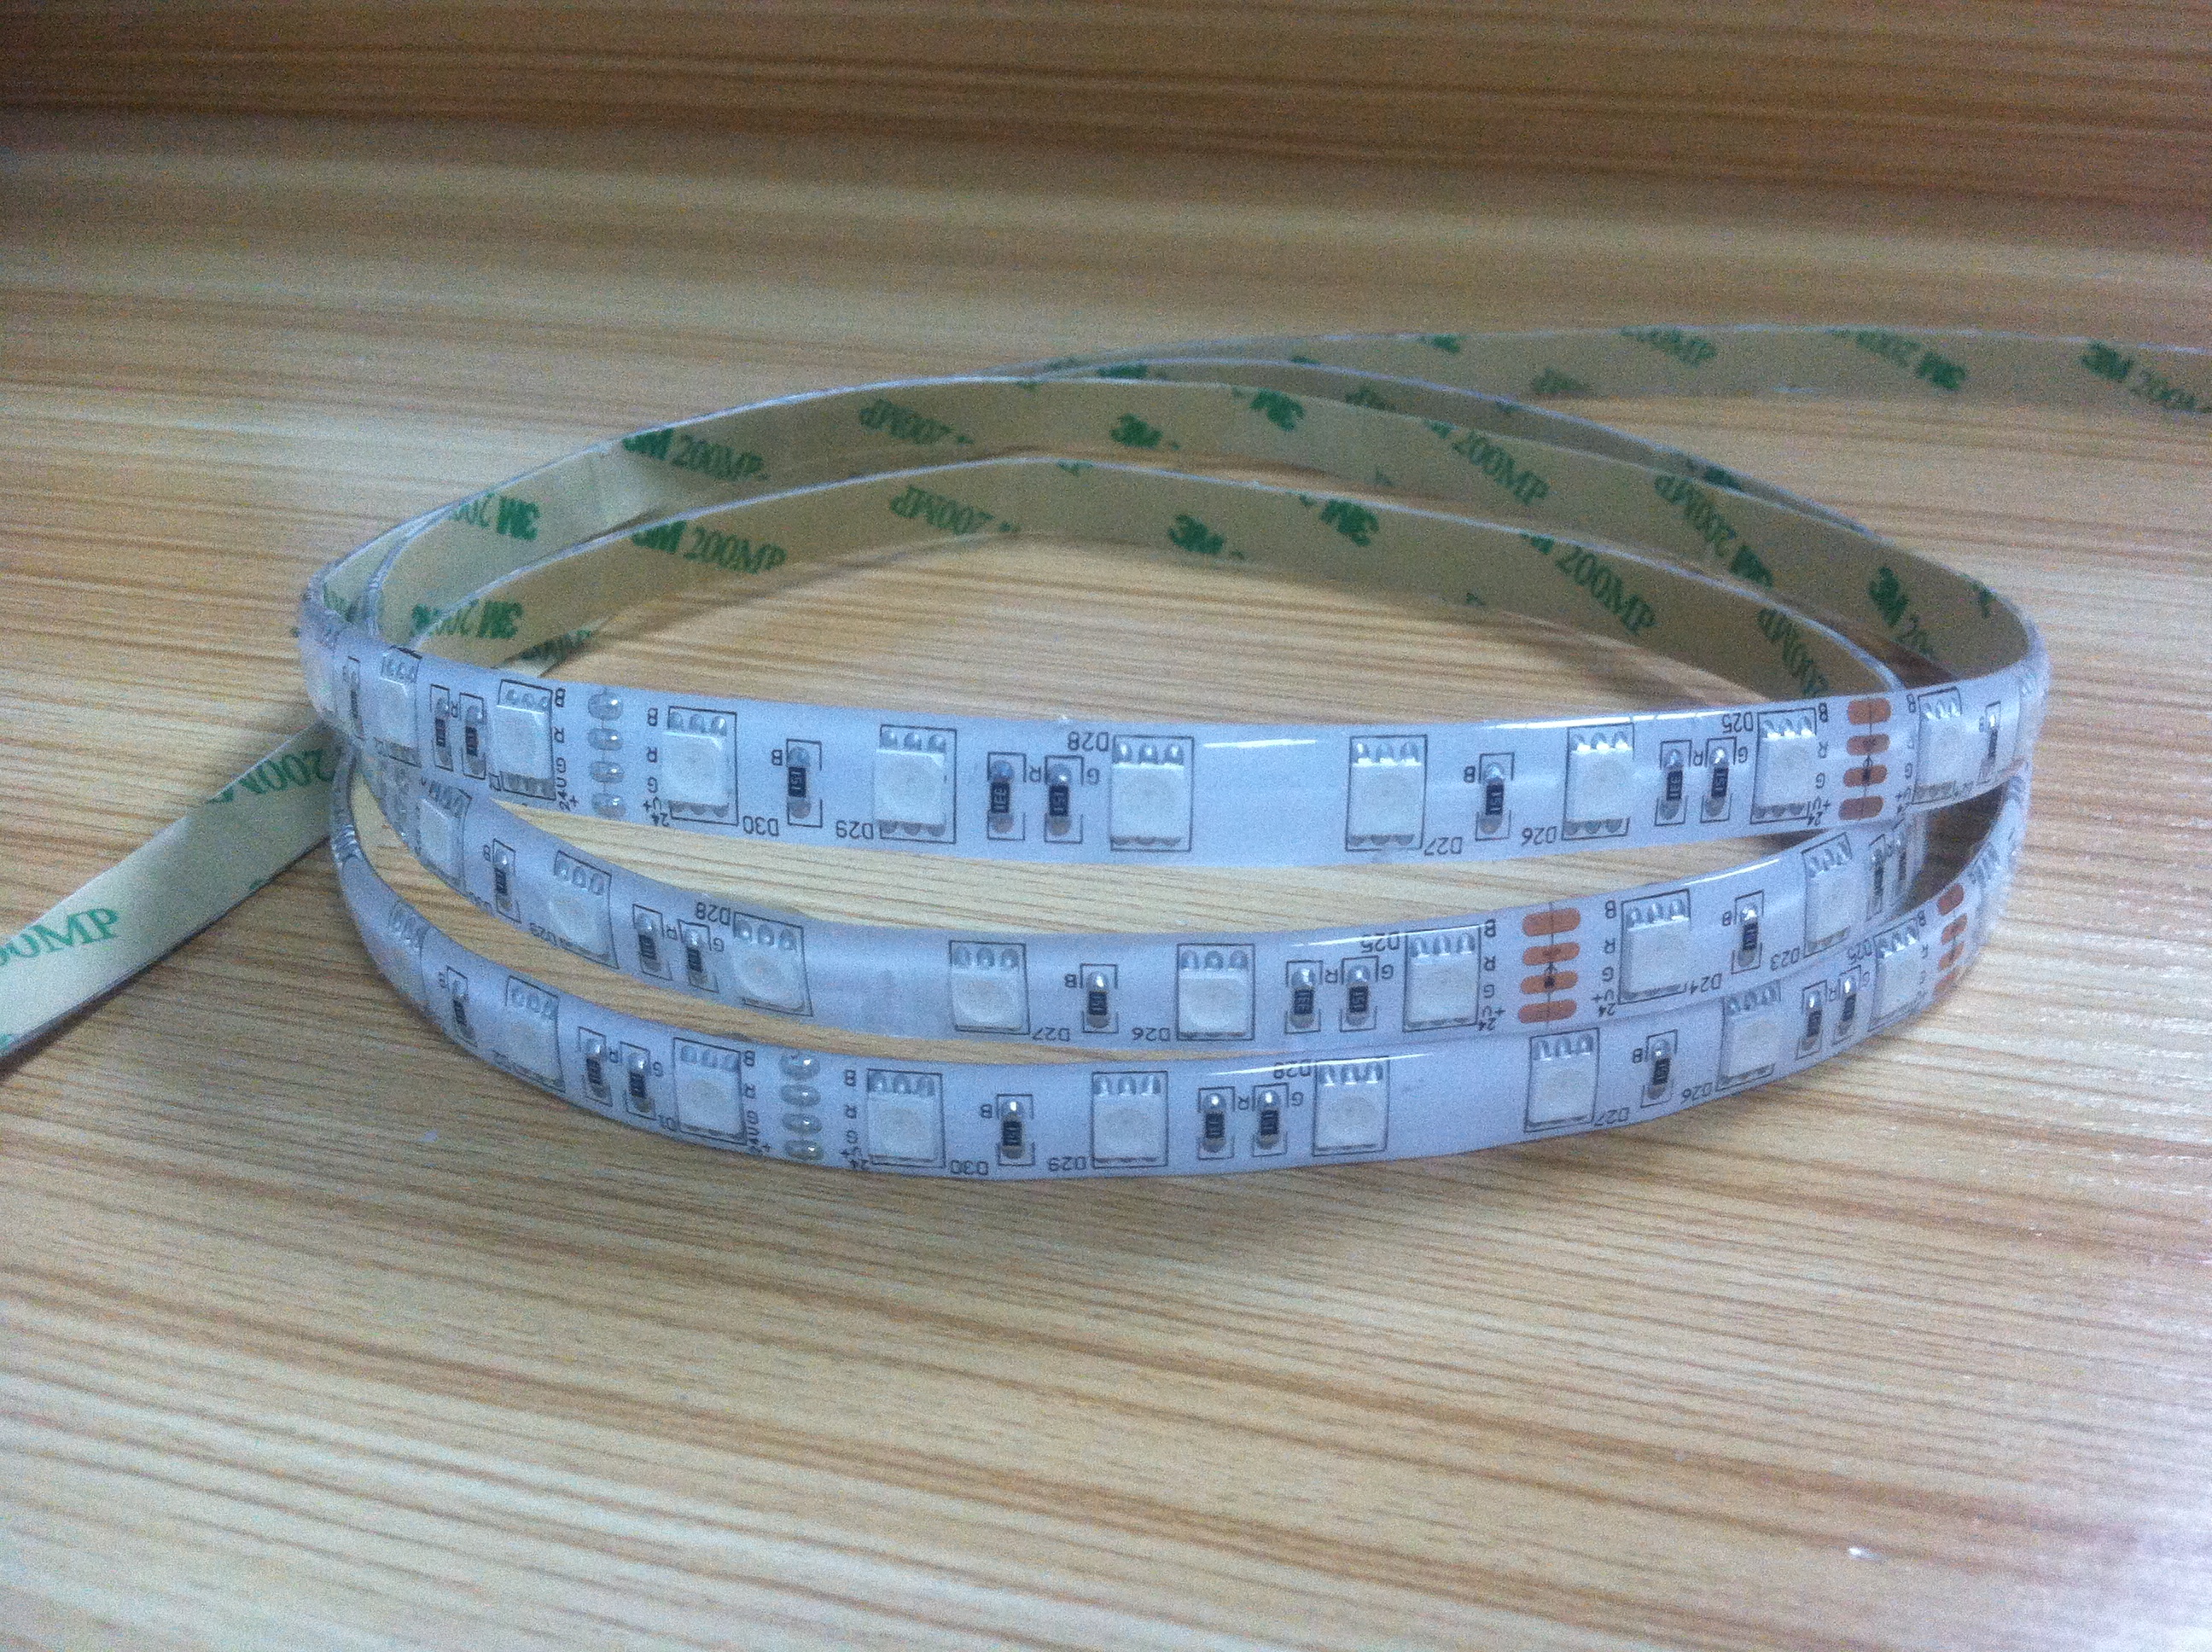 Strip led 24v - Strip LED Fleksibel